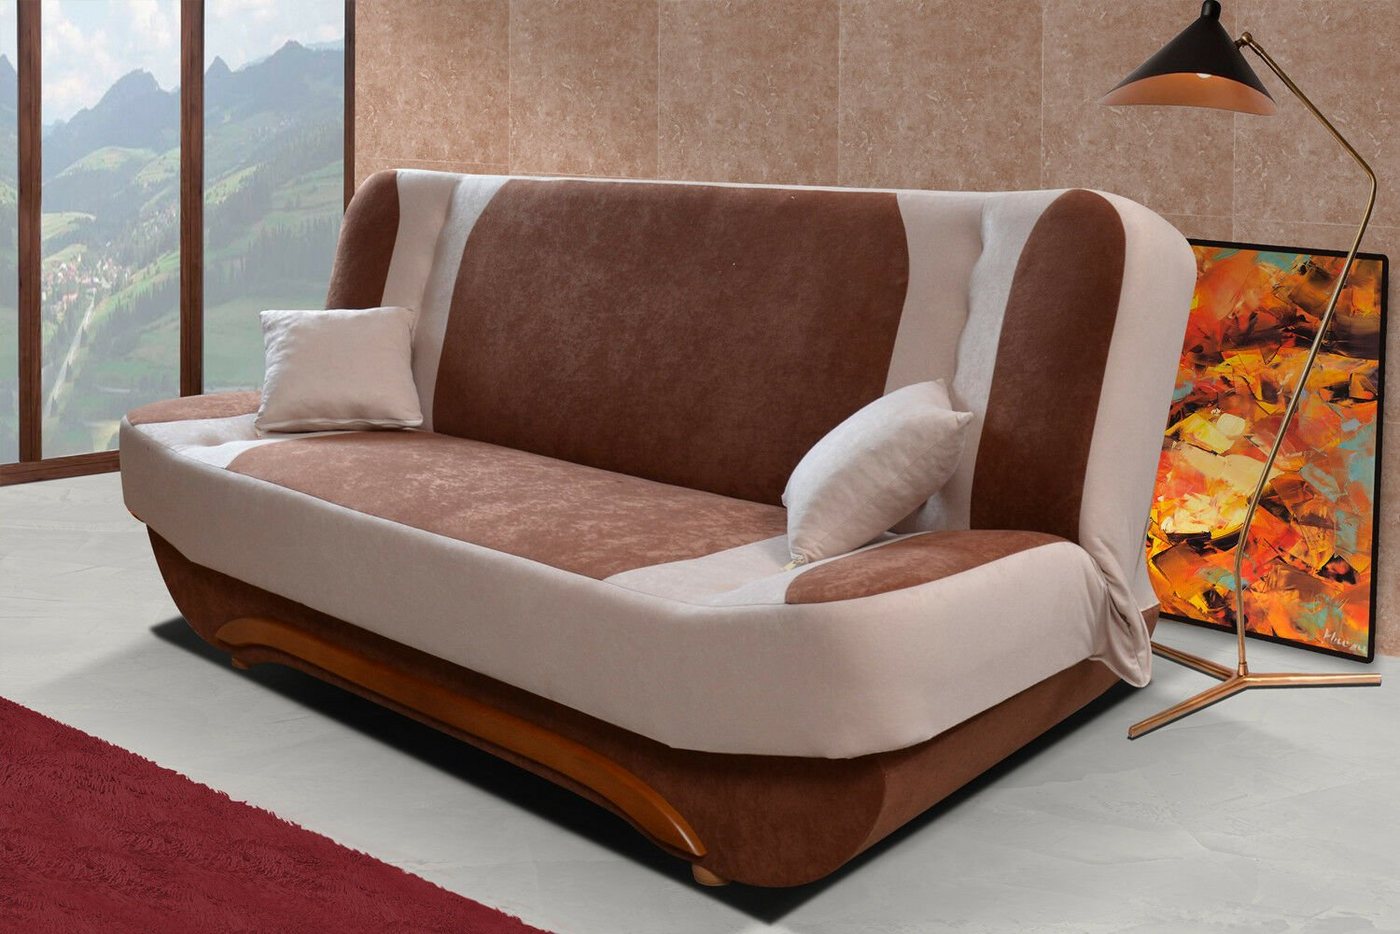 JVmoebel Sofa Couch Schlafsofa XXL Textil Big Sofa Couchen 3Sitzer, Made in Europe von JVmoebel